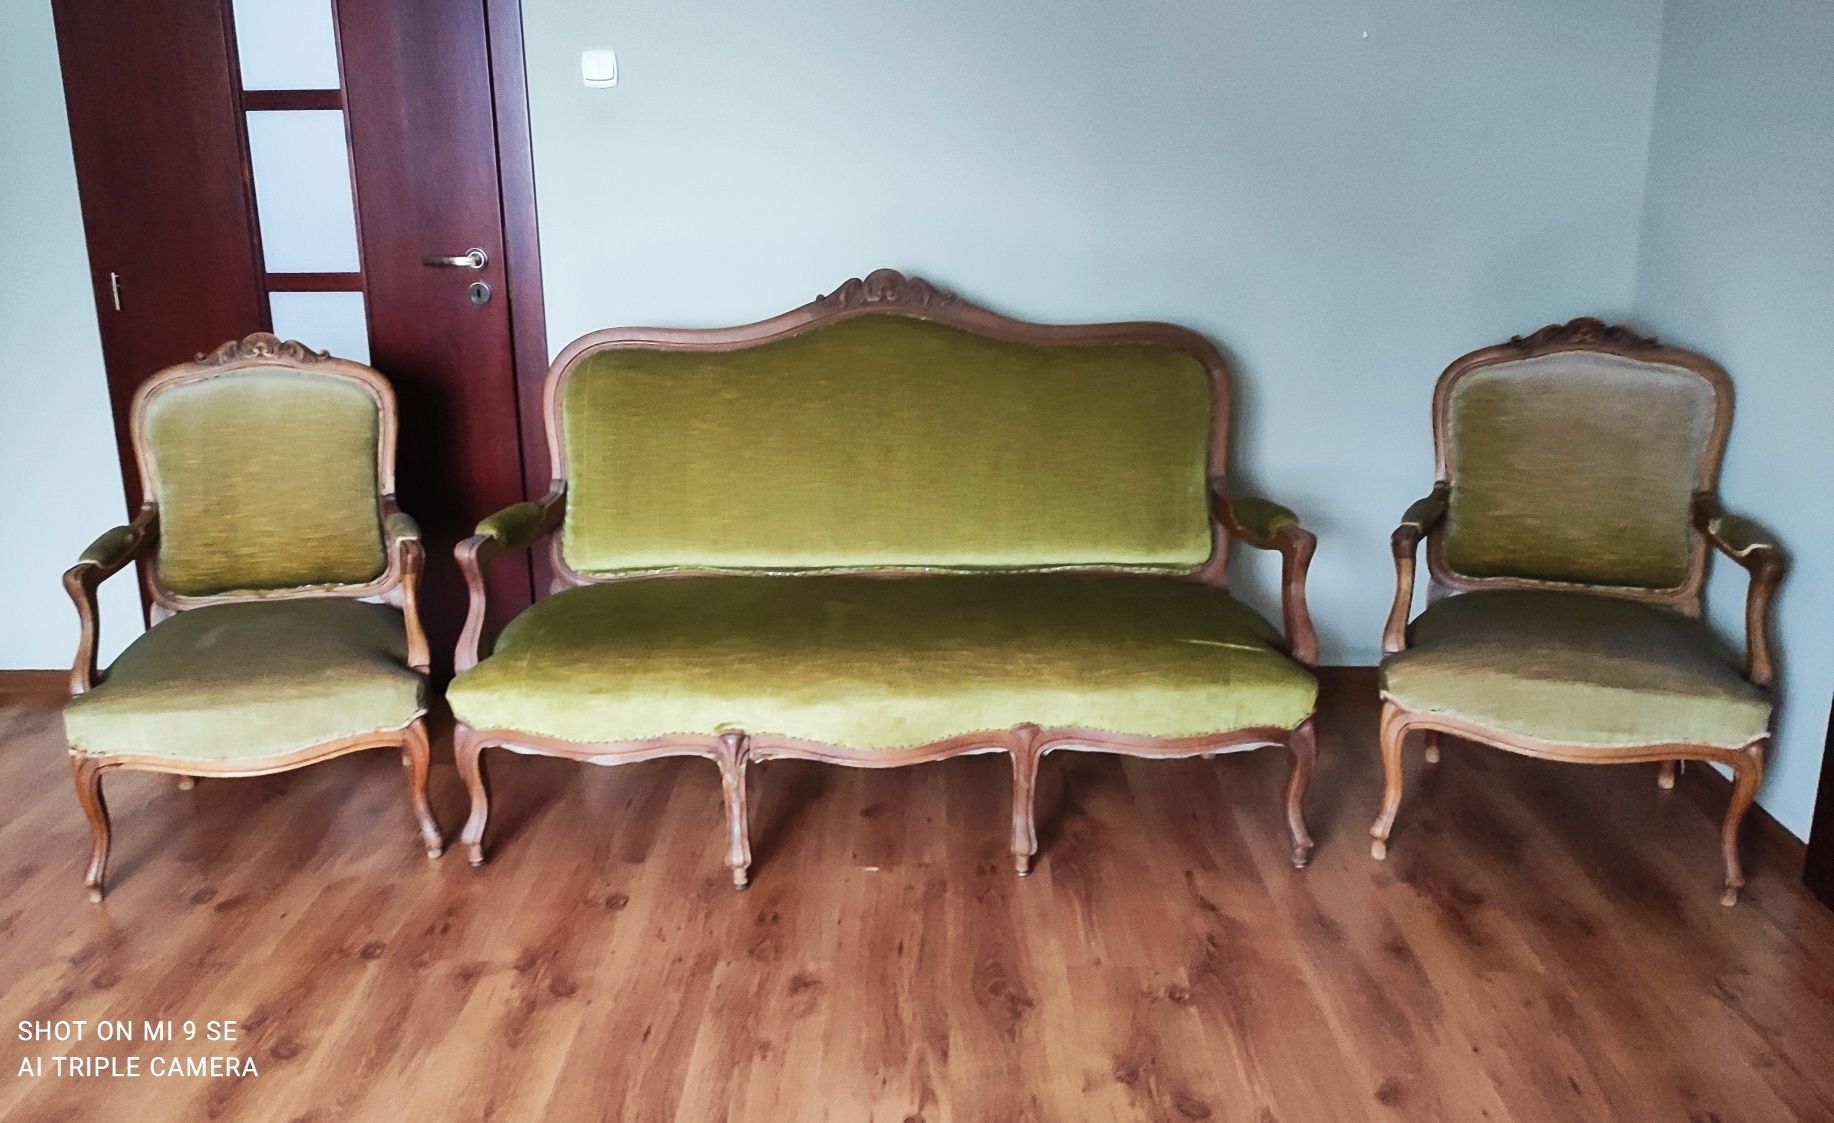 Sofa, dwa fotele, 4 krzesła, Ludwik, ludwikowskie.